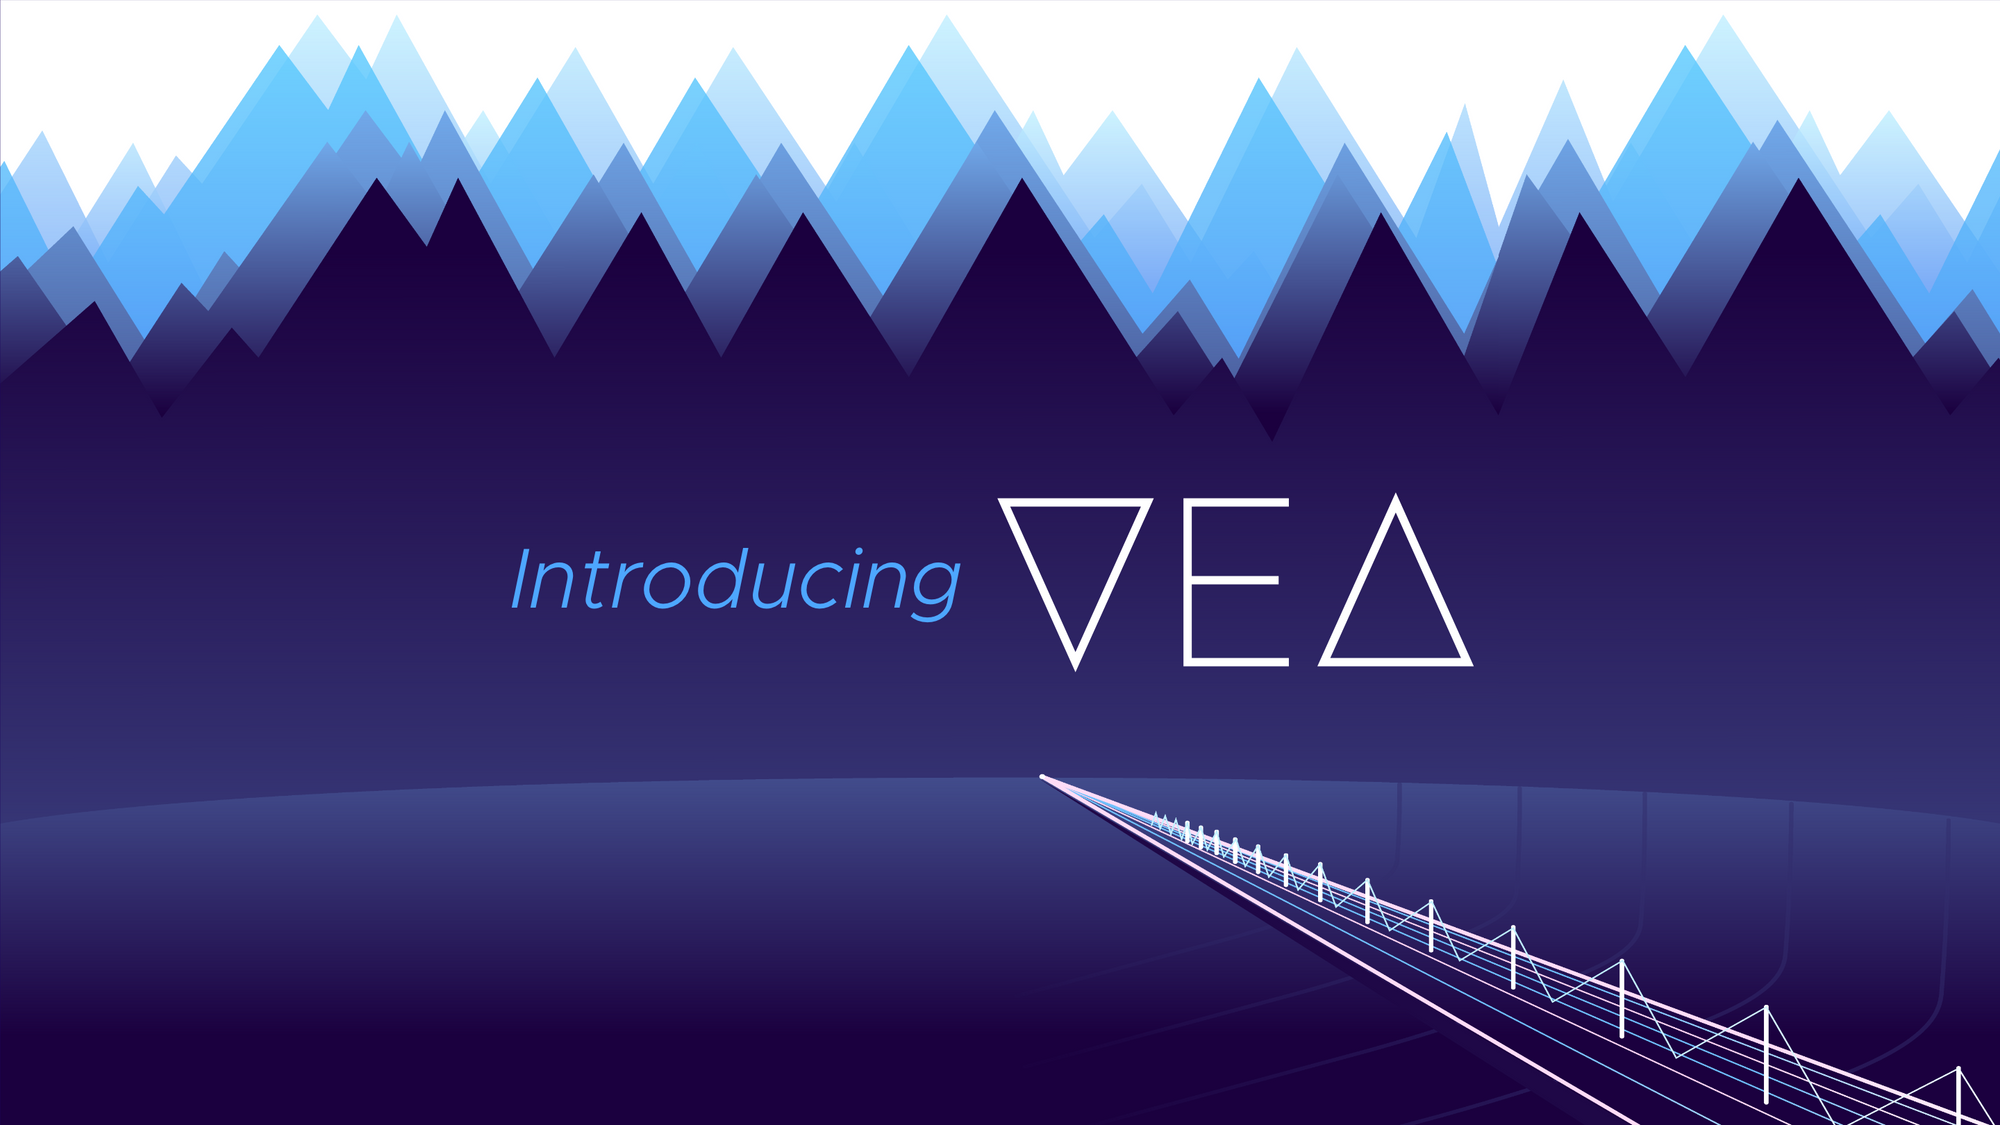 Trust Yourself - Introducing the Vea Bridge